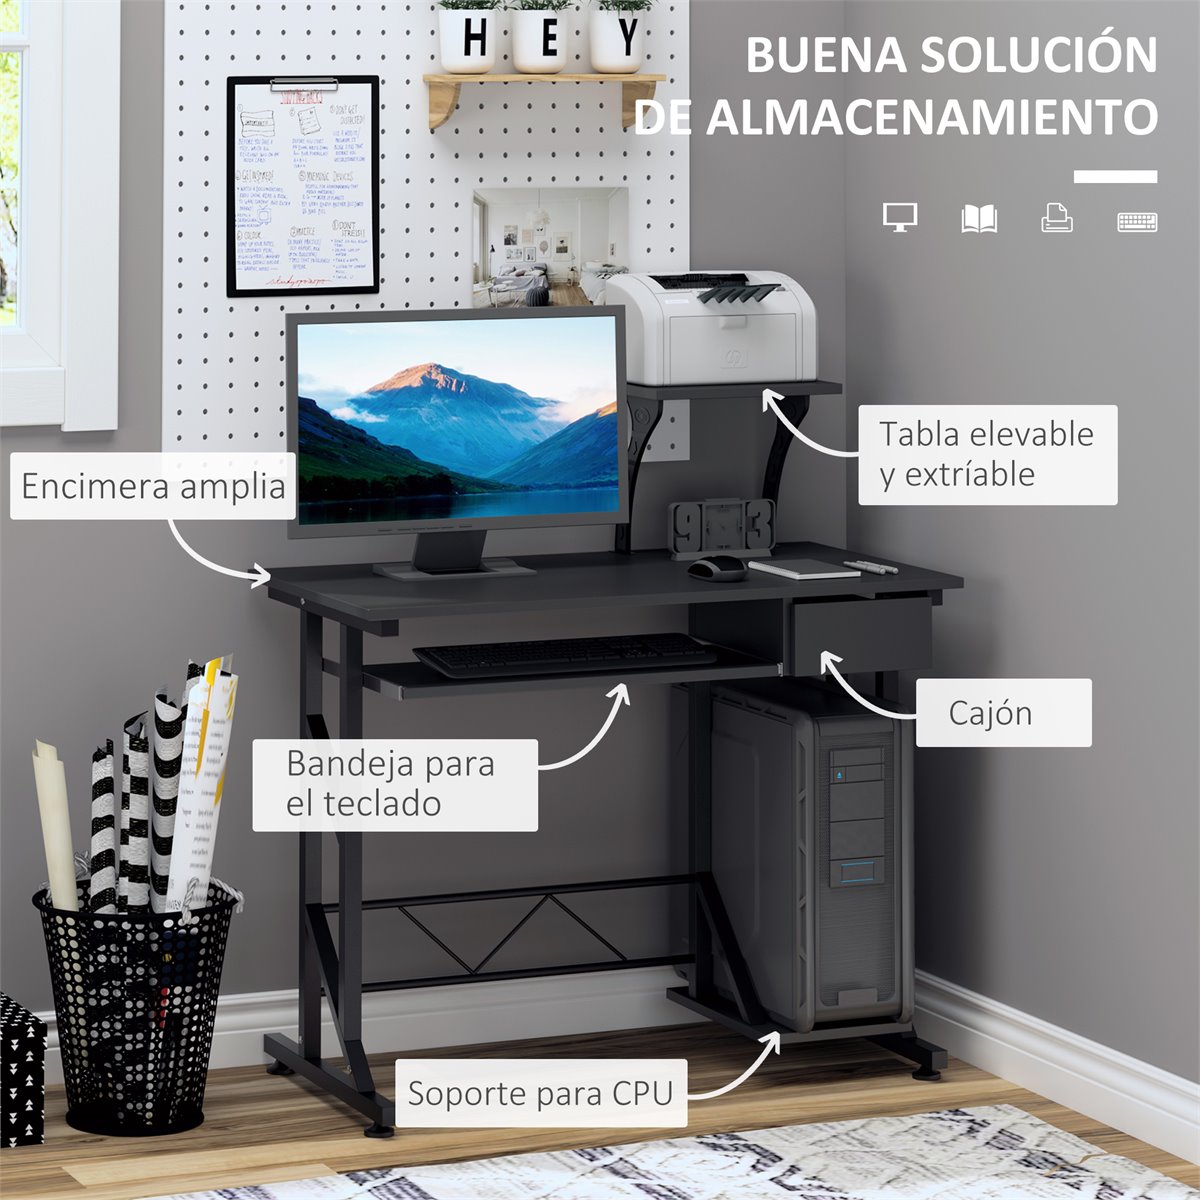 Mesa para ordenador e impresora